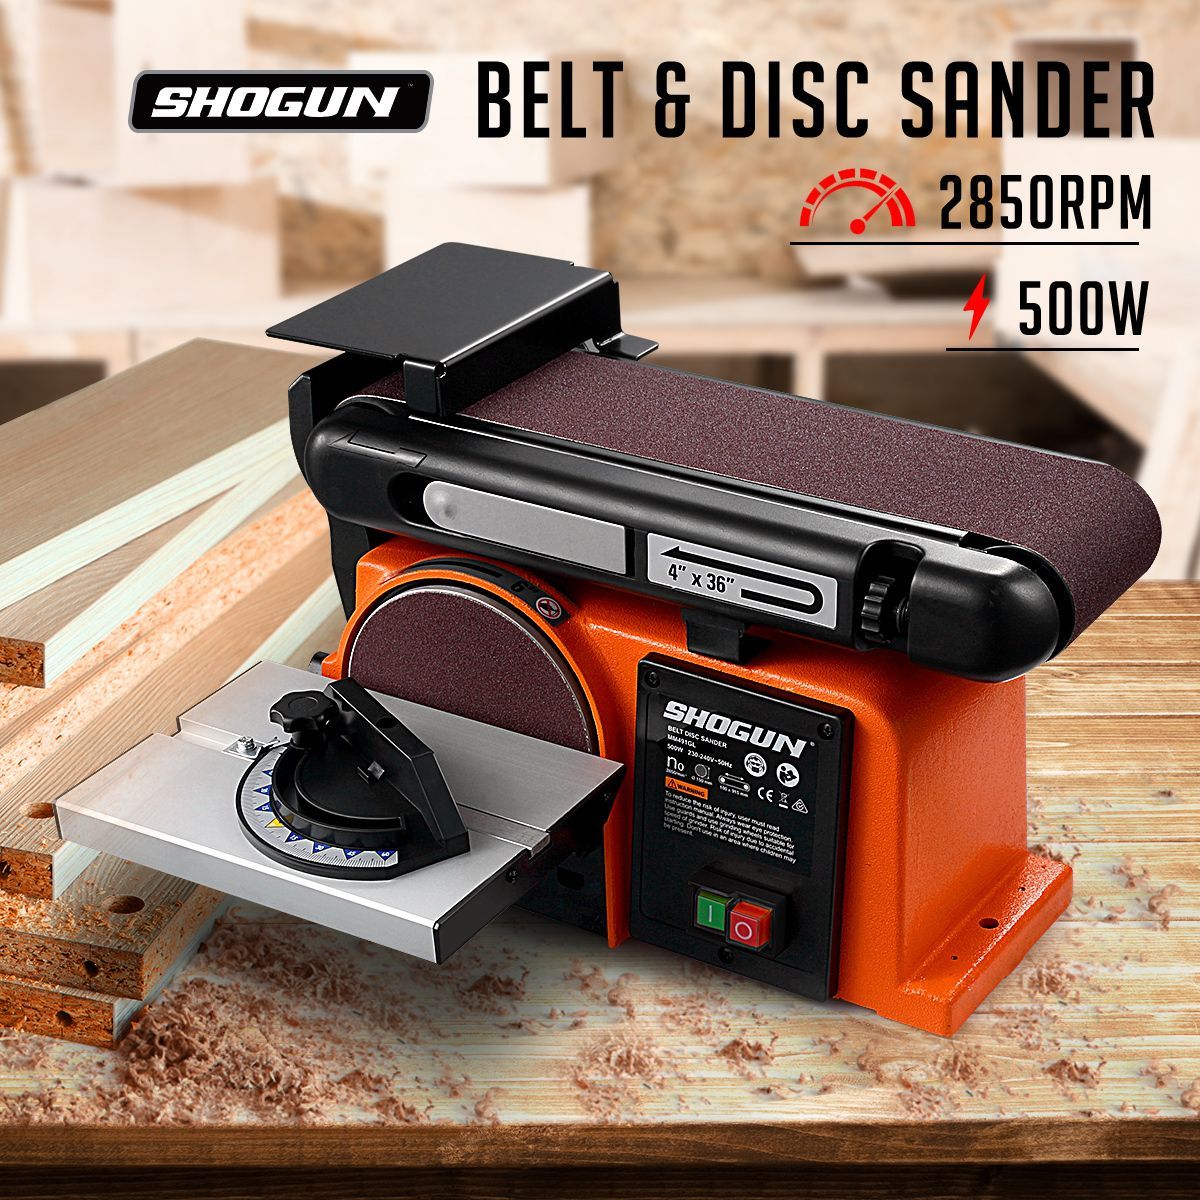 Shogun 500w Belt Disc Sander Power Tool Linisher Machine Grinder Bench Sanding 4x36 Belt 6 Disc